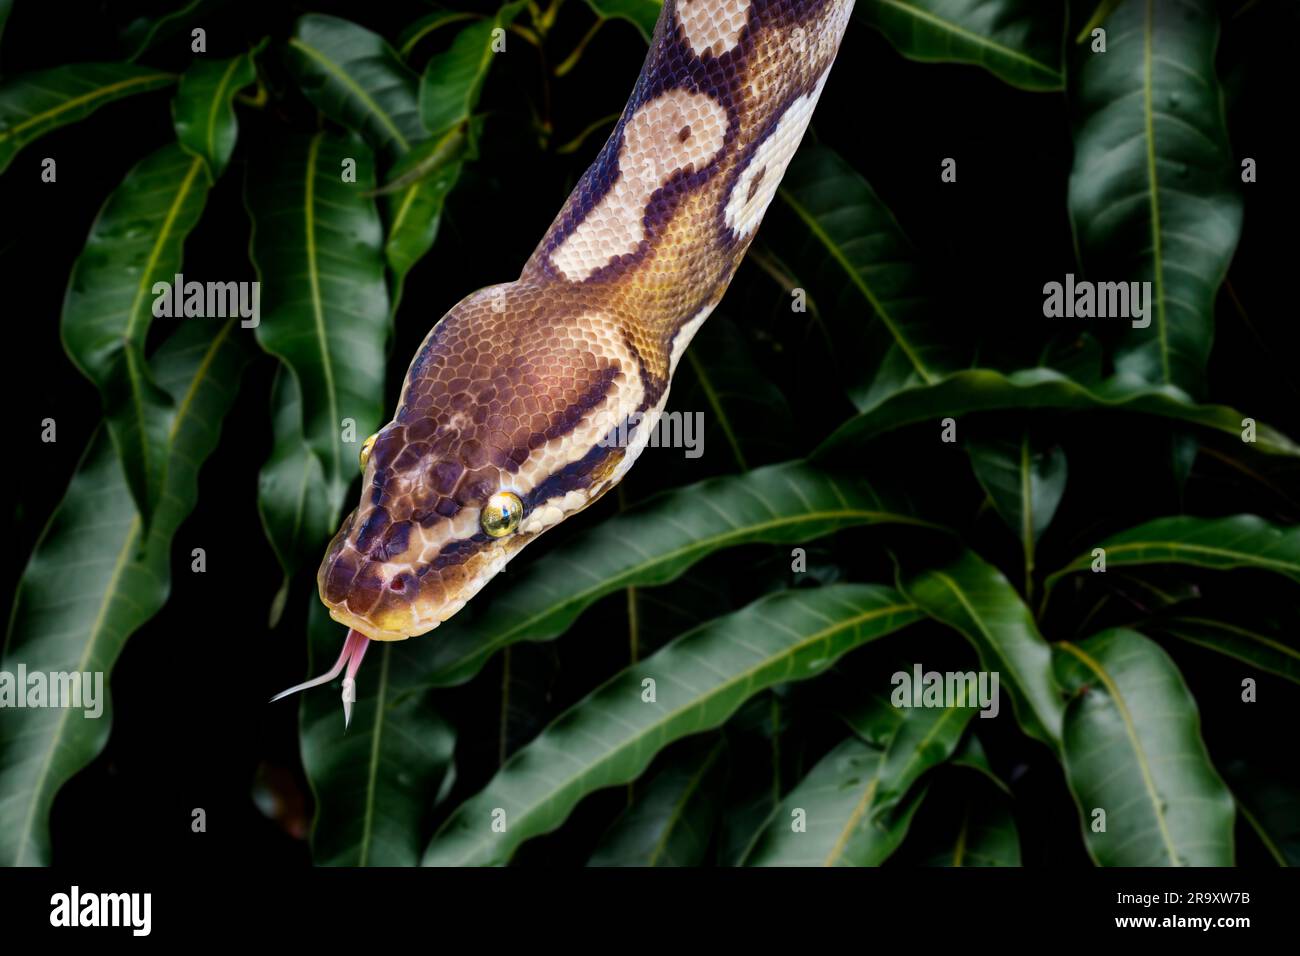 Le serpent à maïs, Pantherophis guttatus, parfois appelé serpent à rat rouge, est une espèce de serpent à rat nord-américain de la famille des Colubridae. Tête avec languette Banque D'Images